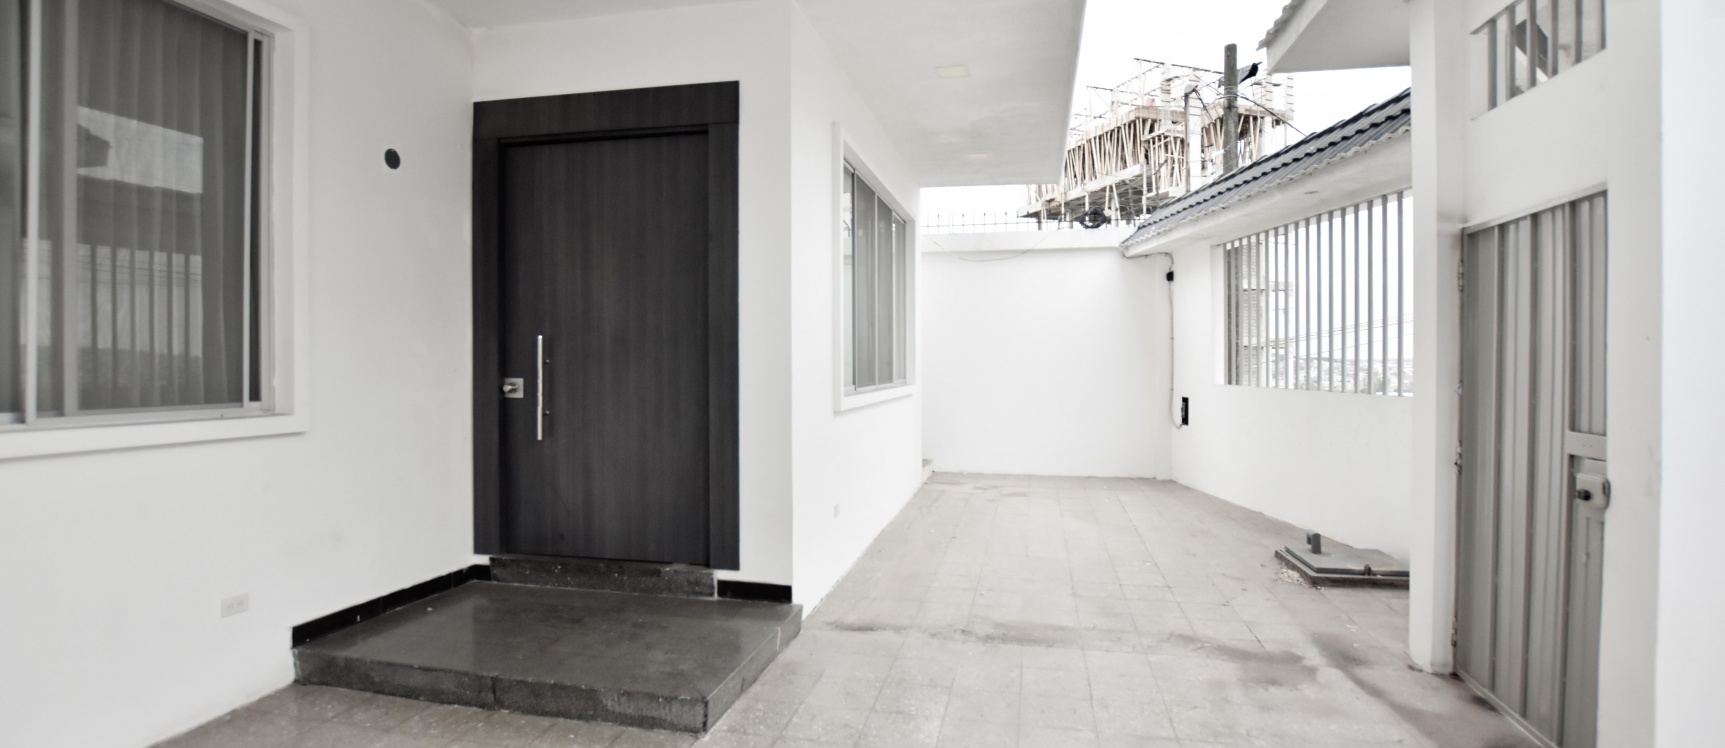 GeoBienes - Casa en venta en los Ceibos - Urbanización los Senderos - Plusvalia Guayaquil Casas de venta y alquiler Inmobiliaria Ecuador